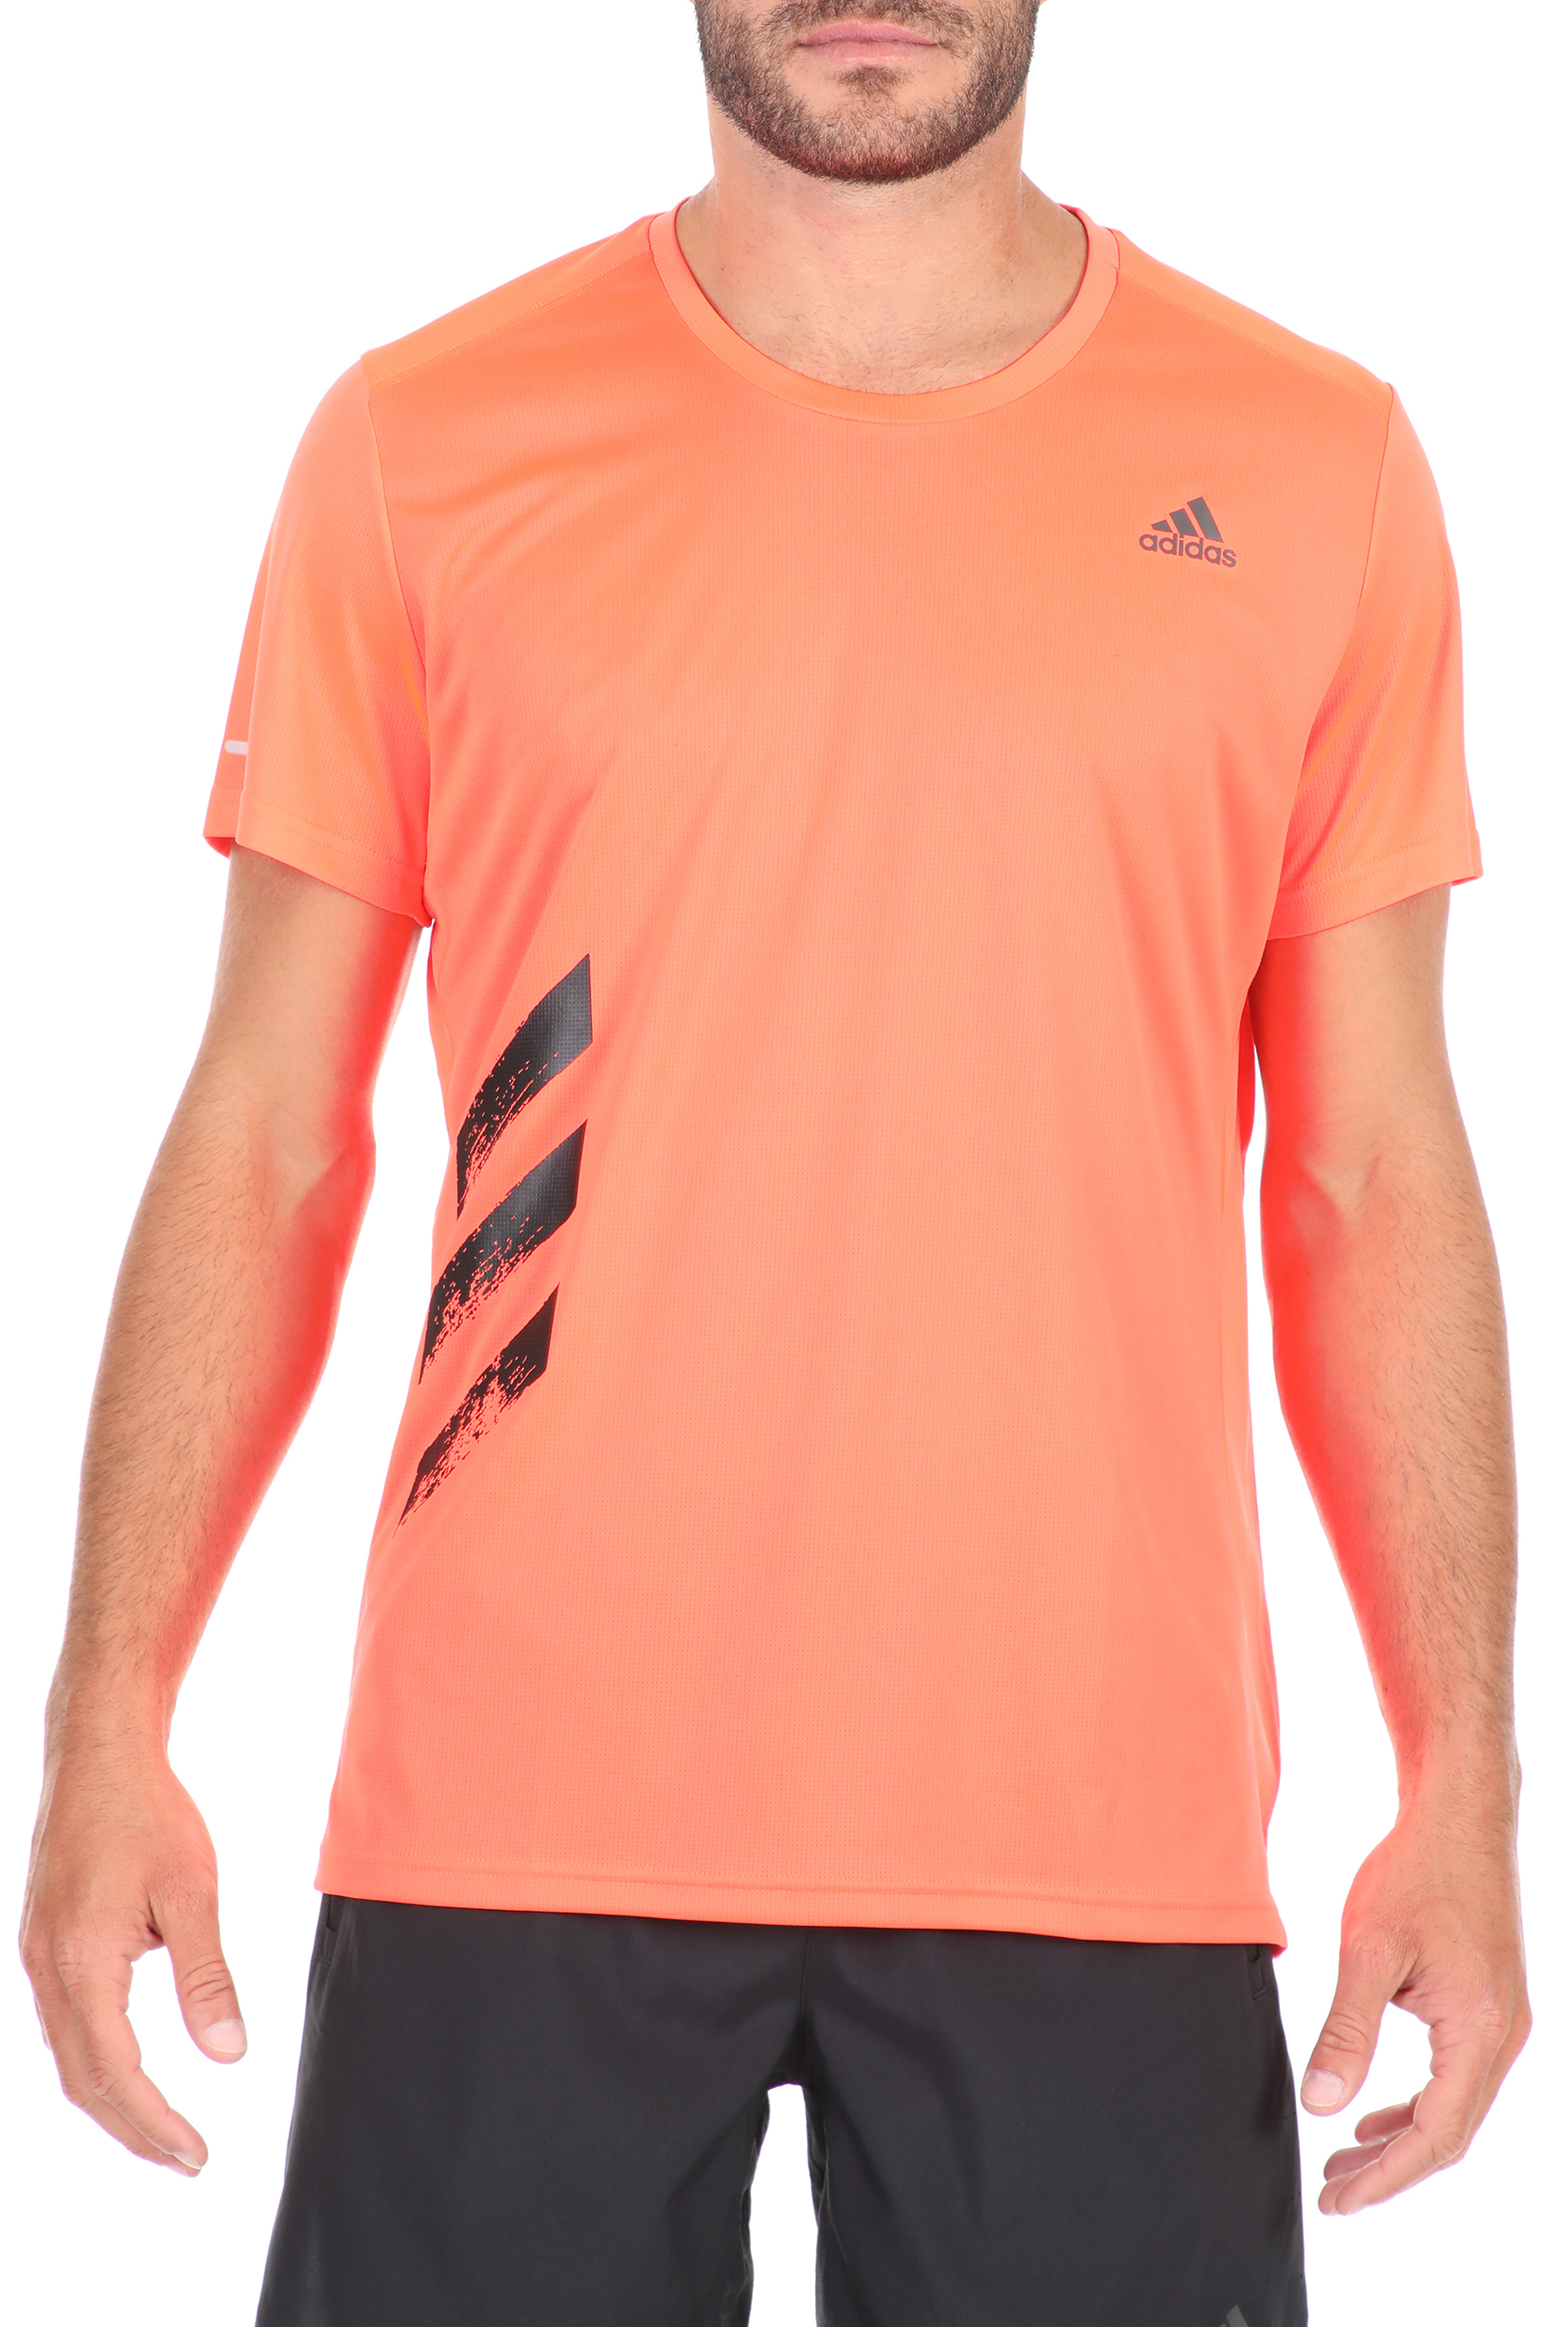 Ανδρικά/Ρούχα/Αθλητικά/T-shirt adidas Performance - Ανδρικό t-shirt adidas Performance RUN IT TEE 3S πορτοκαλί